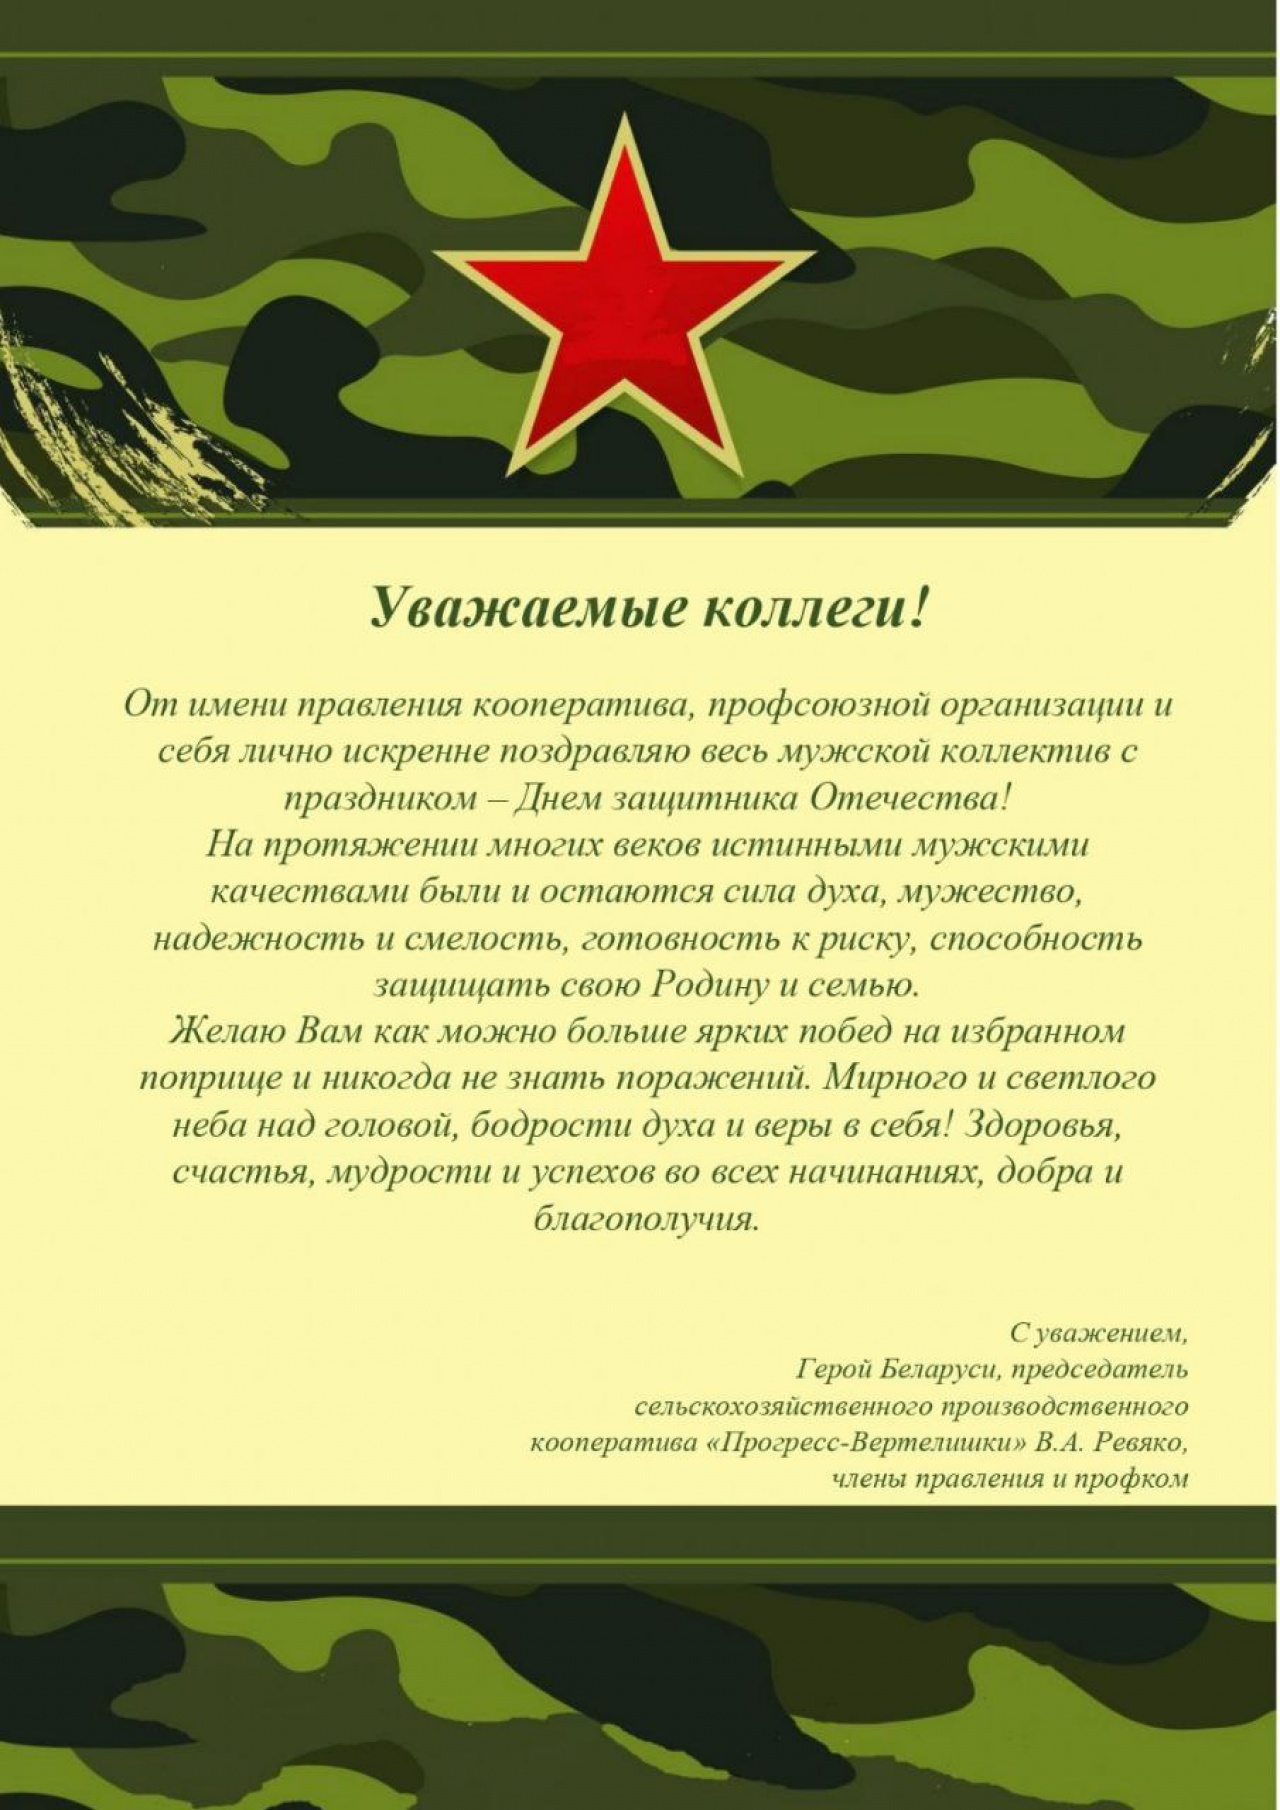 В СПК «Прогресс-Вертелишки» поздравили всех мужчин с Днем защитников Отечества